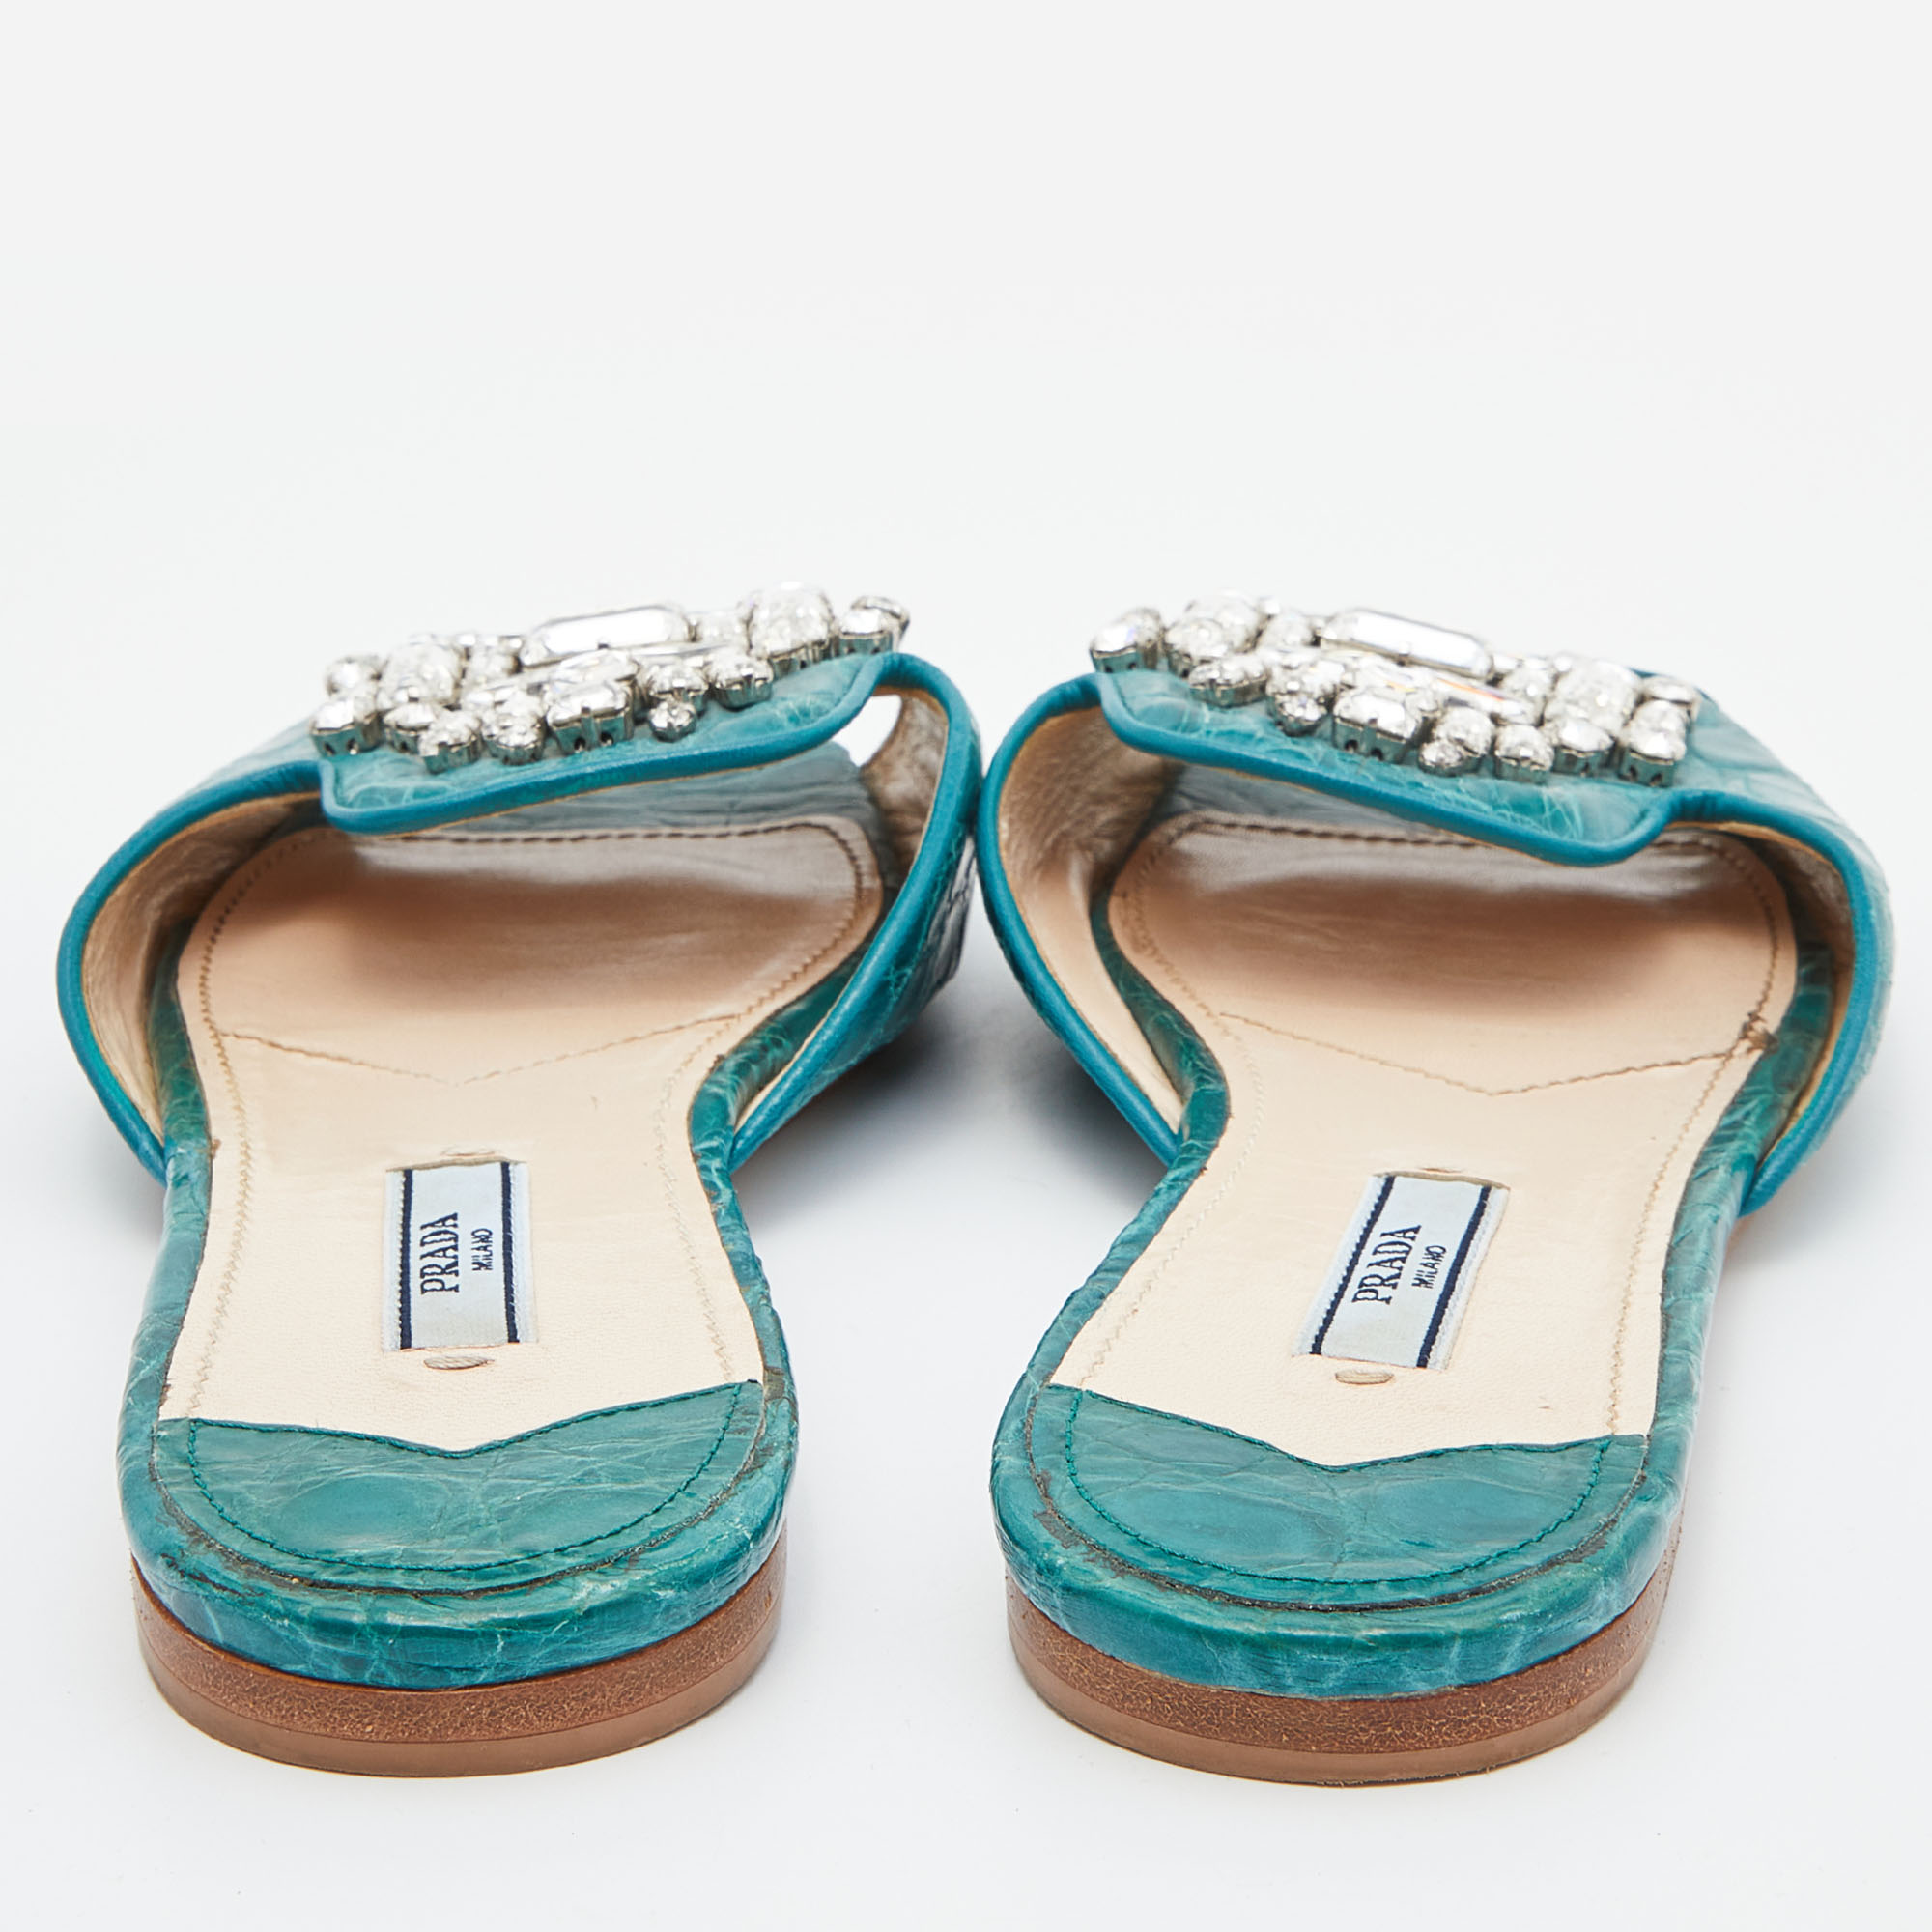 Prada Teal Croc Embossed Leather Crystal Embellished Flat Slides Size 37